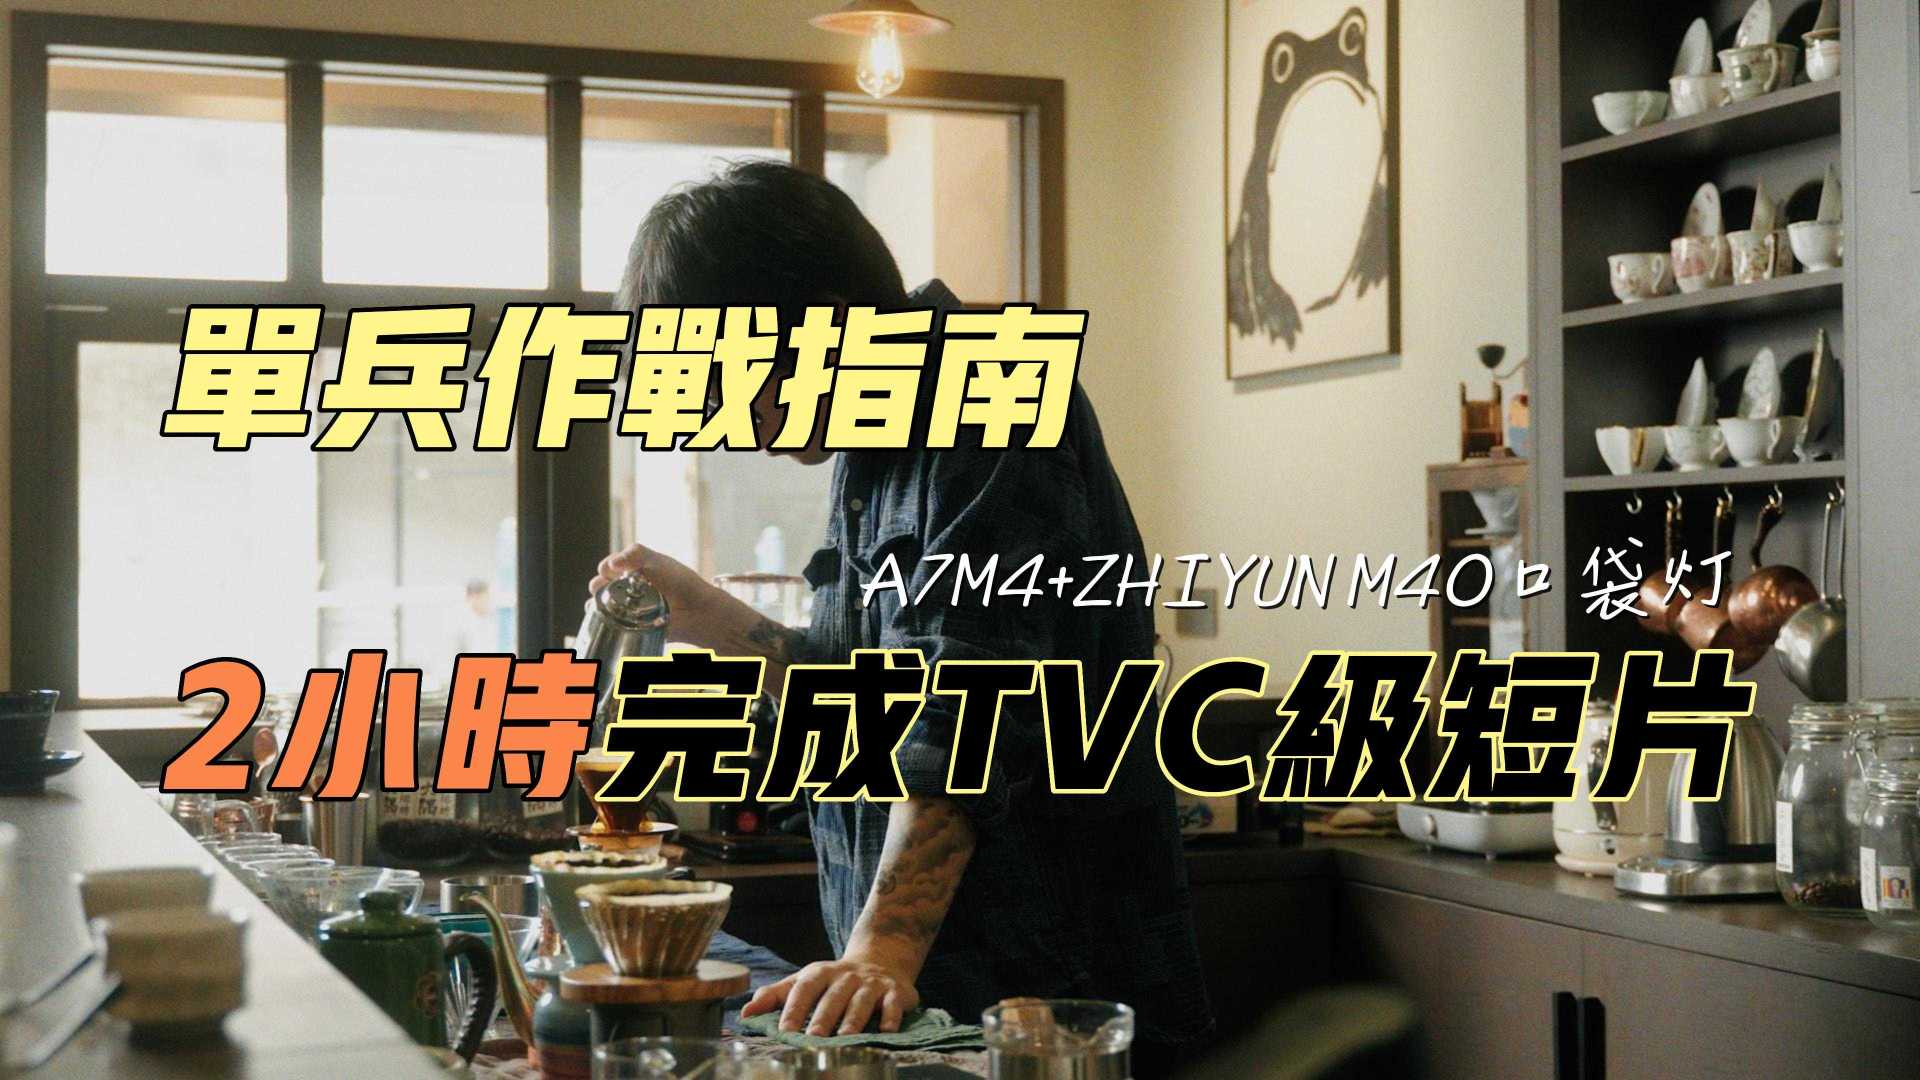 挑战2小时"单兵单灯单镜头"完成TVC级咖啡短片【含幕后花絮】